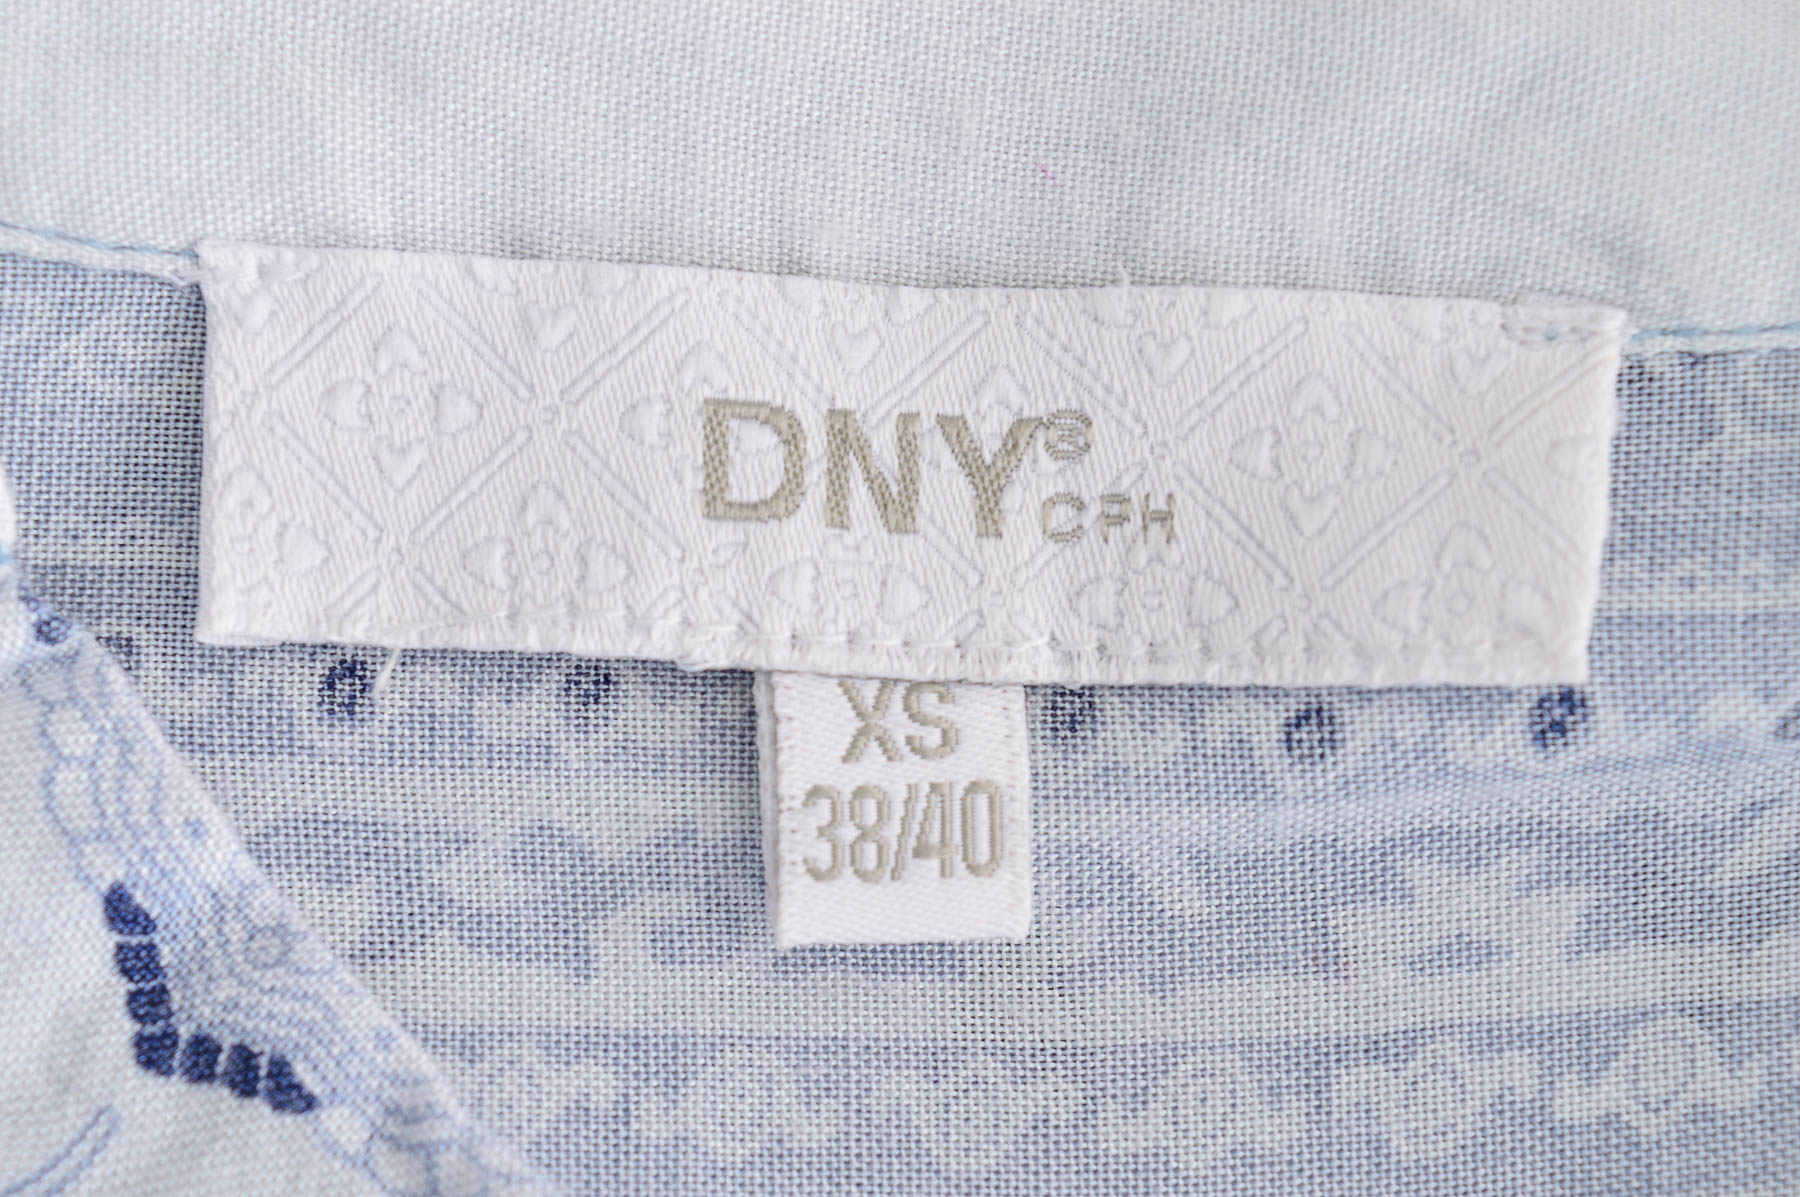 Women's shirt - DNY 1910 - 2